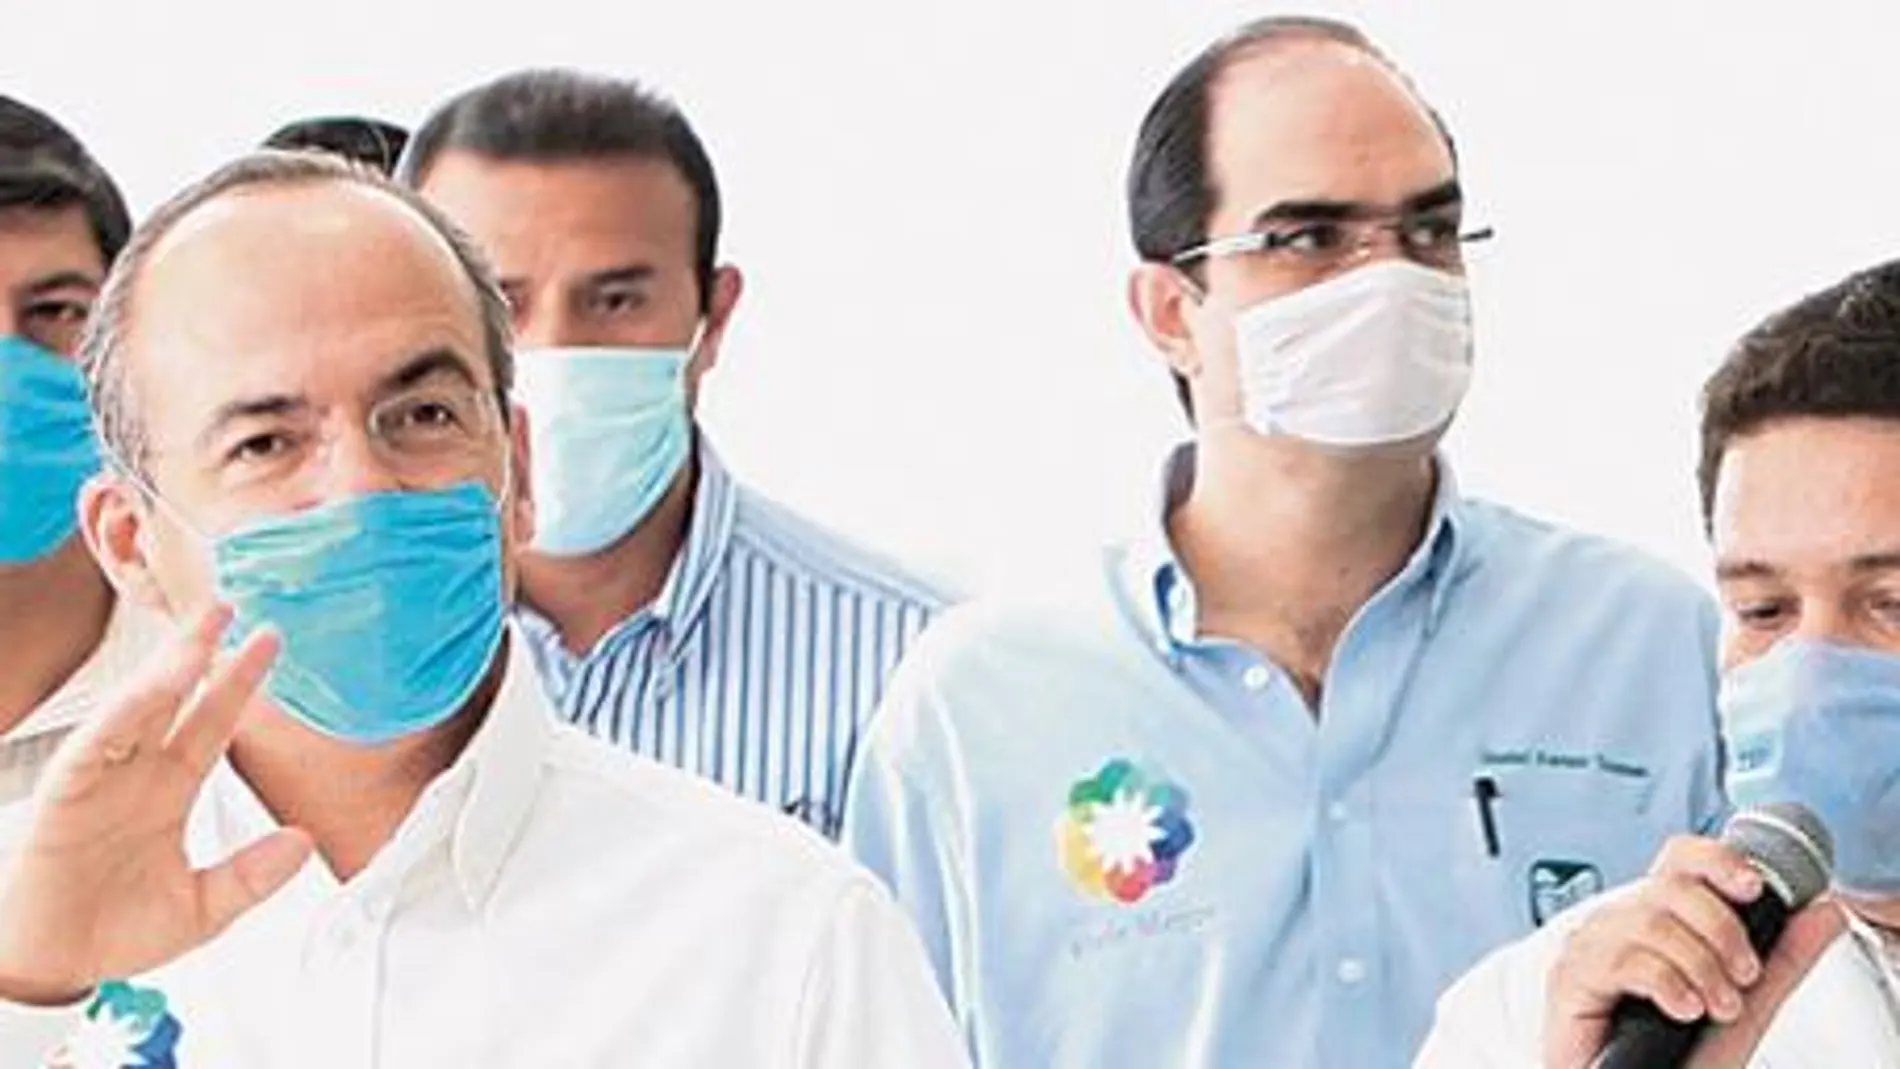 México detecta una mutación del virus H1N1 y avisa de su agresividad